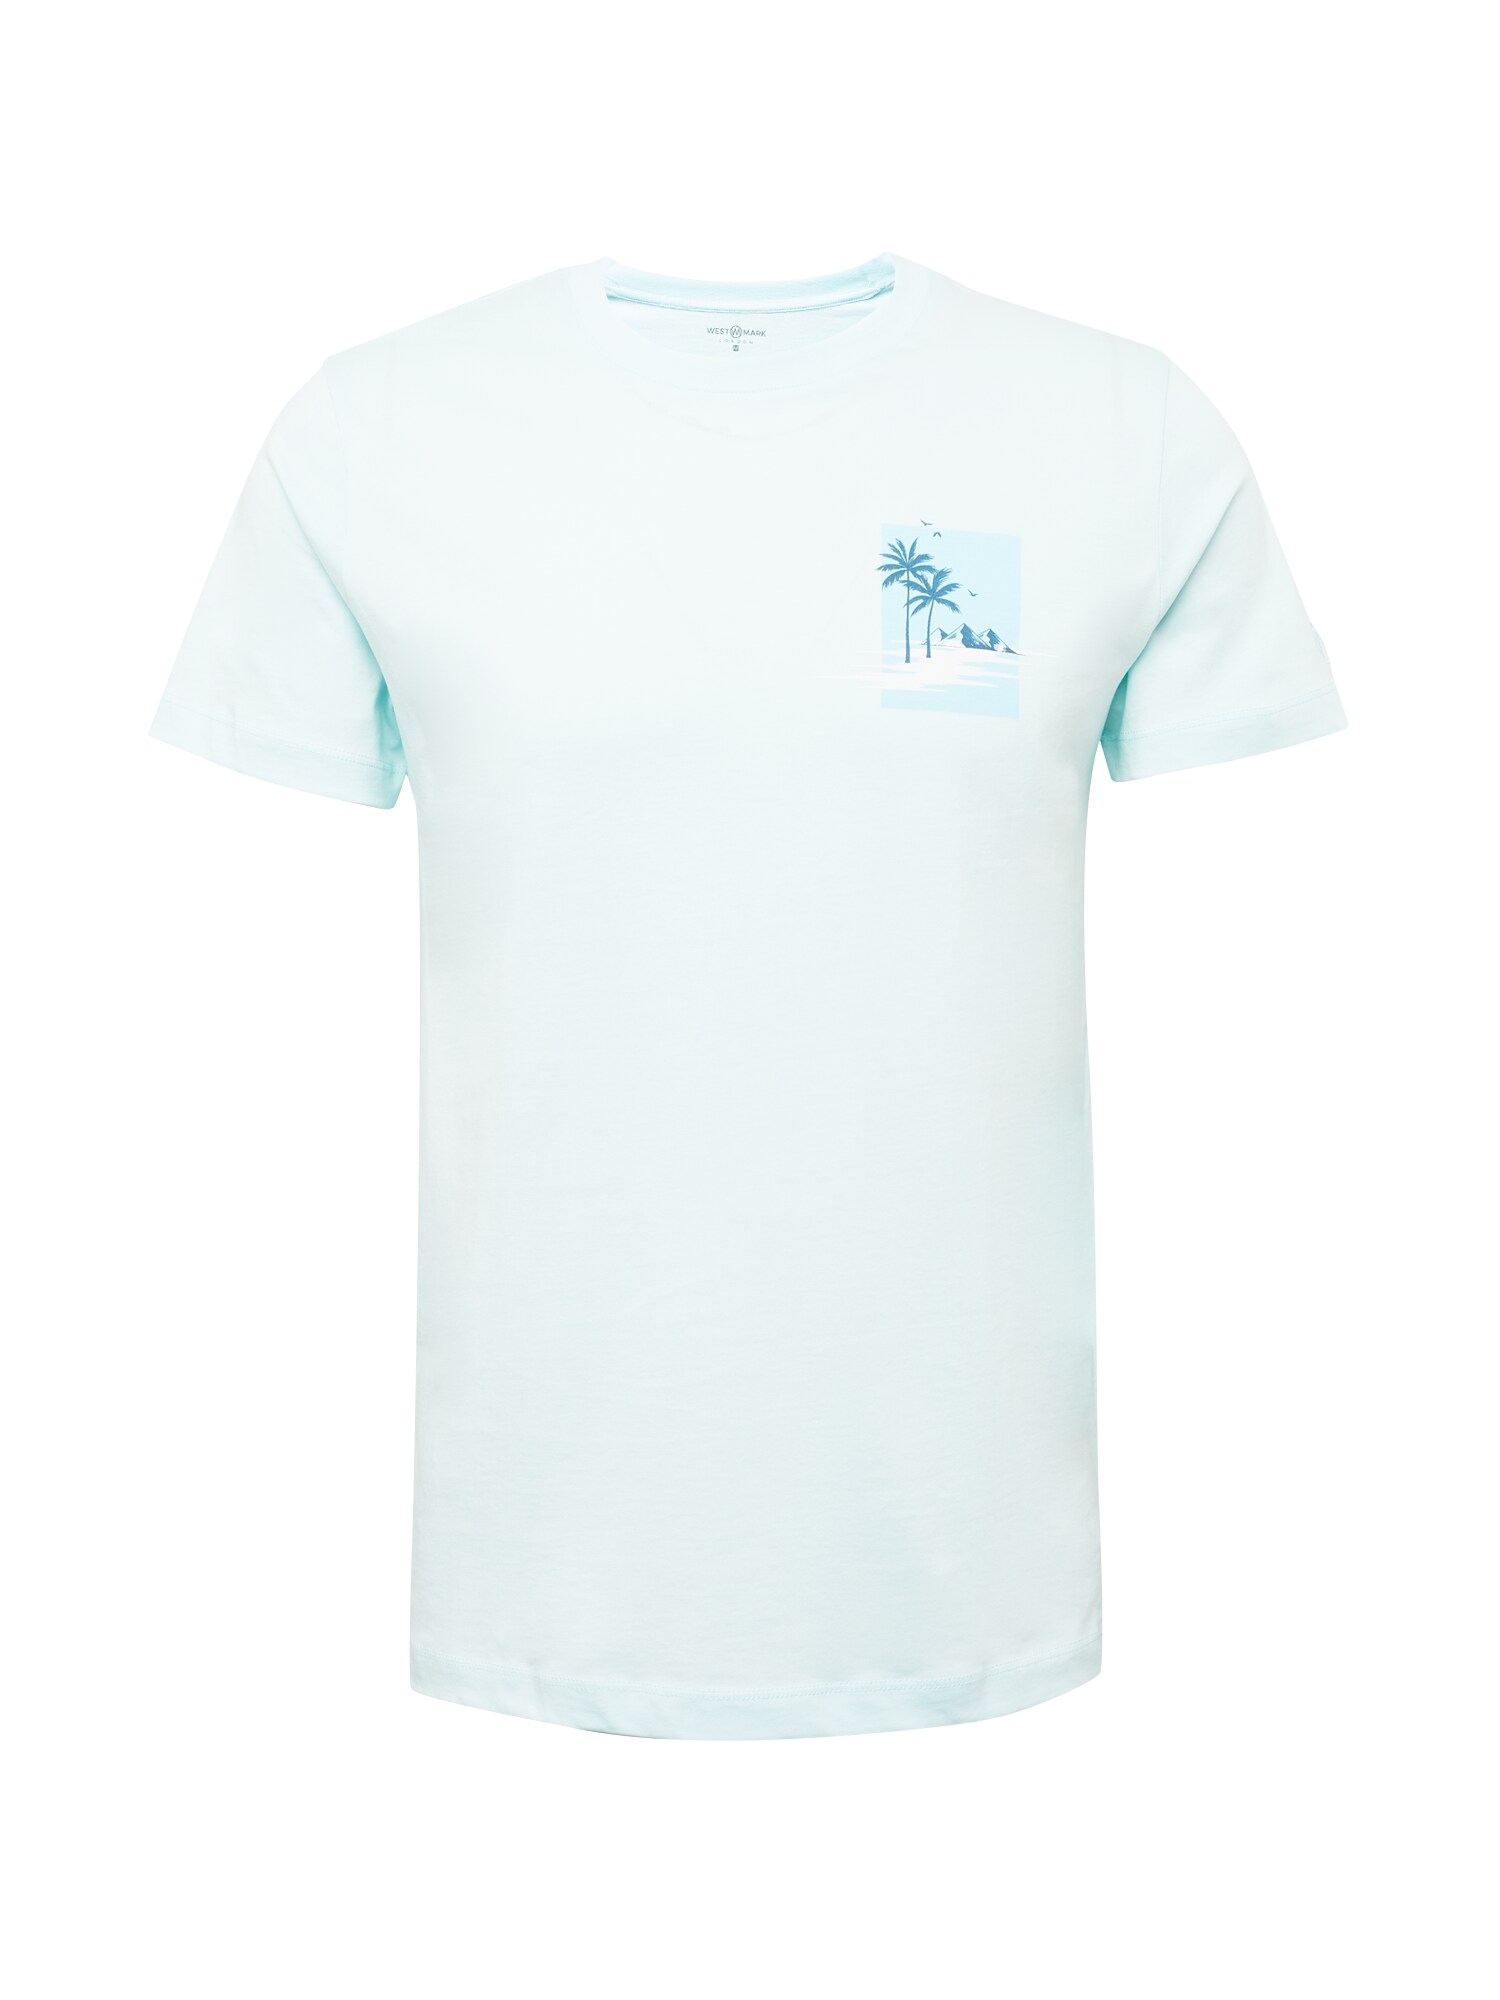 WESTMARK LONDON Marškinėliai pastelinė mėlyna / šviesiai mėlyna / balta